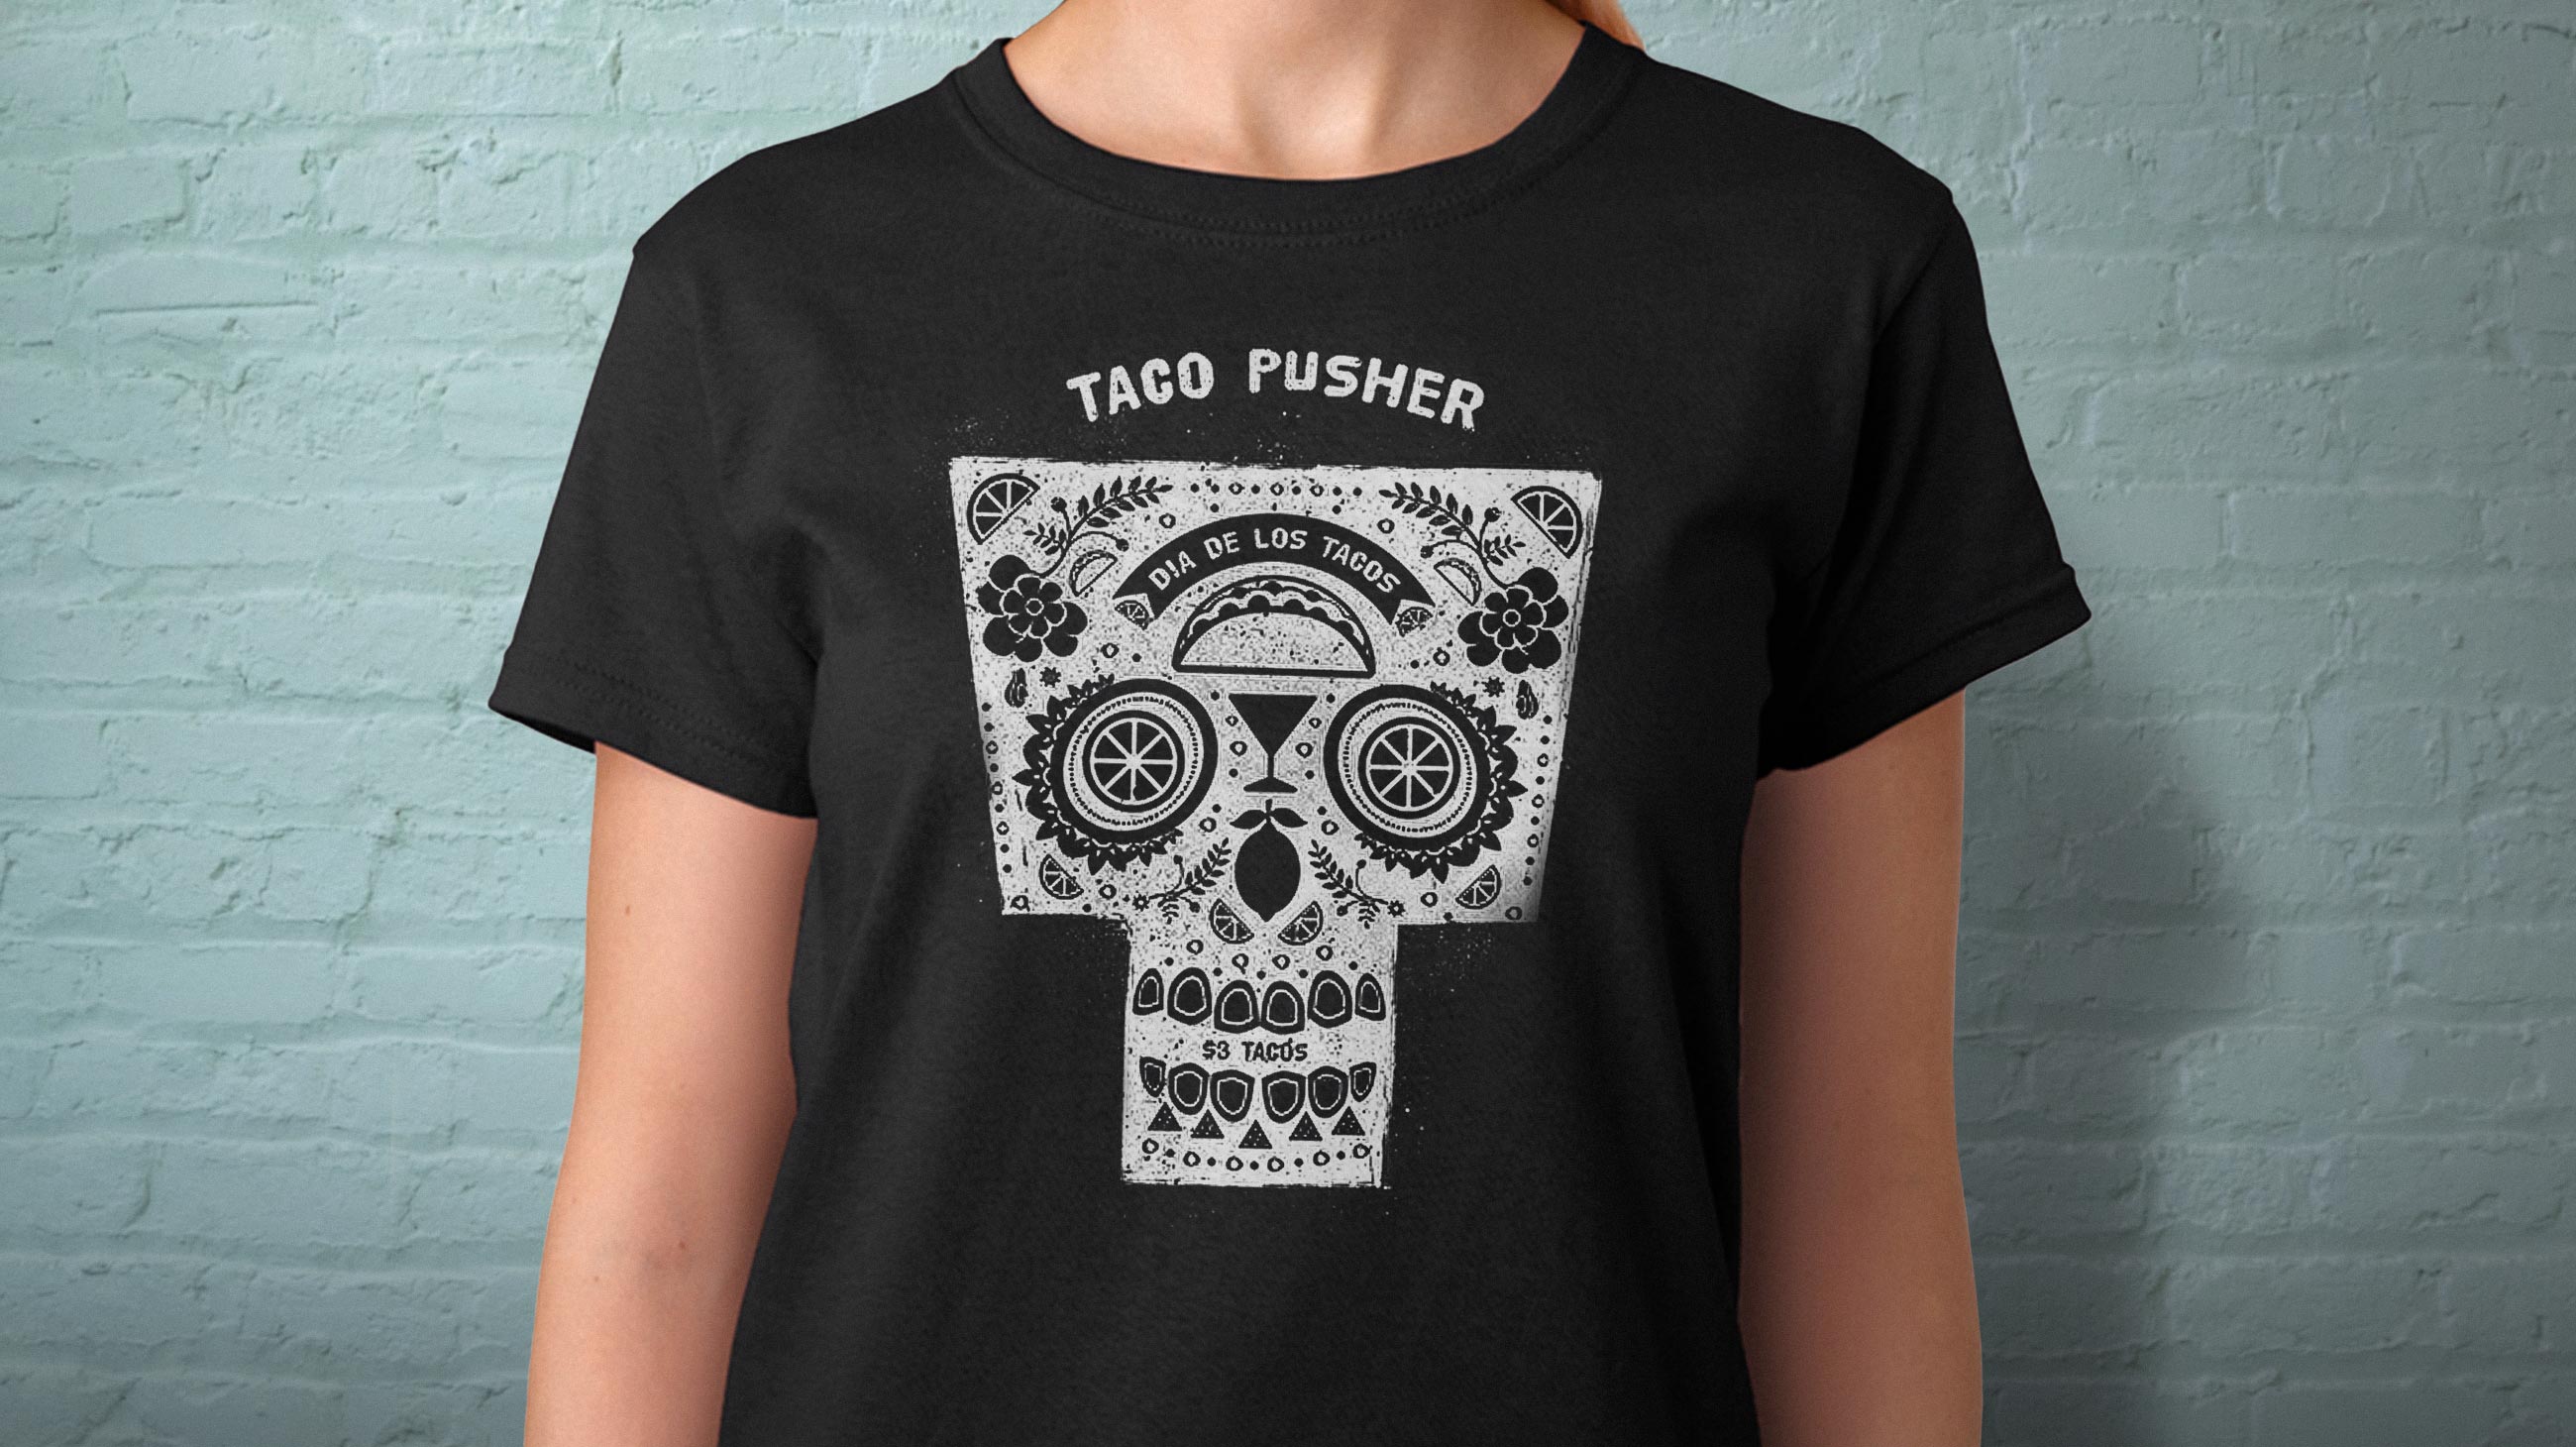 Server wearing black taco pusher t-shirt